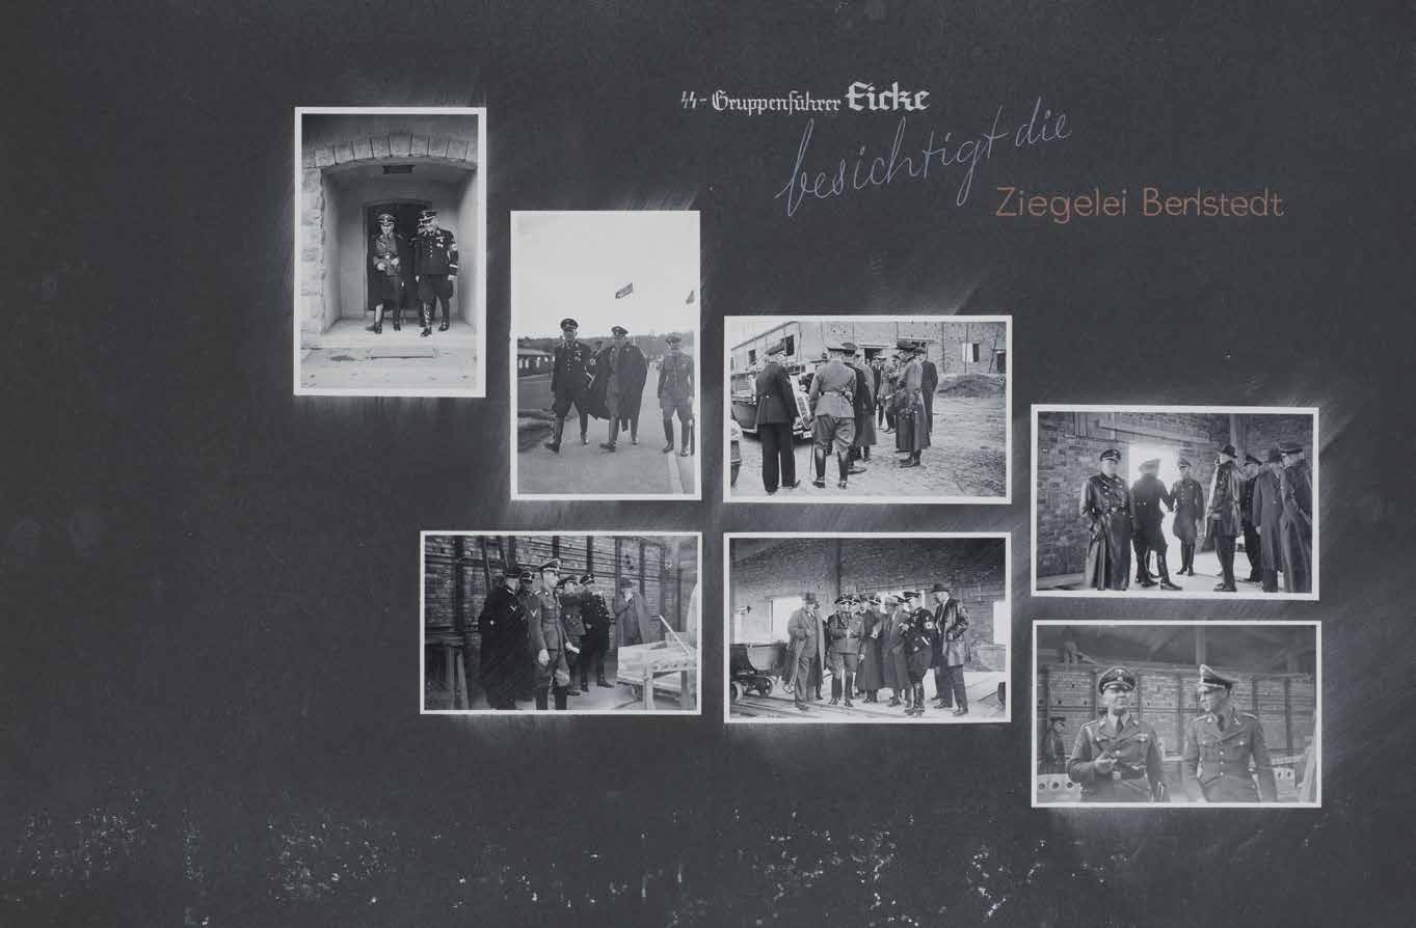 Ausschnitt aus Fotalbum: SS-Gruppenführer Eicke besichtigt die Ziegelei Berlstedt, mehrere Fotografien